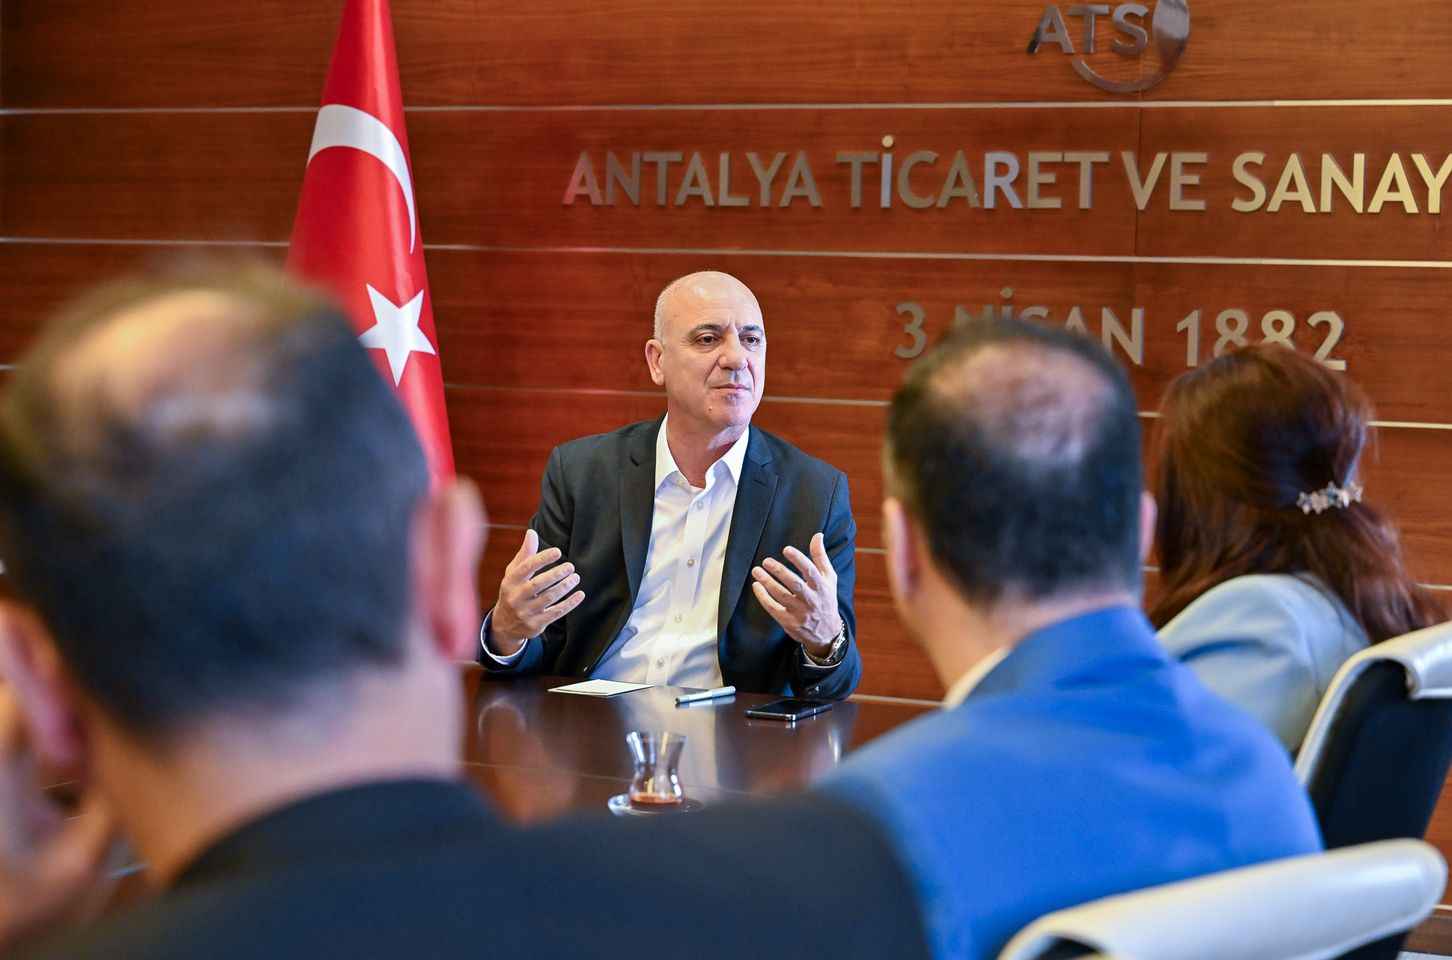 Antalya'da İşgücü Piyasası Güçlendirme ve Mesleki Eğitim Toplantısı Düzenlendi